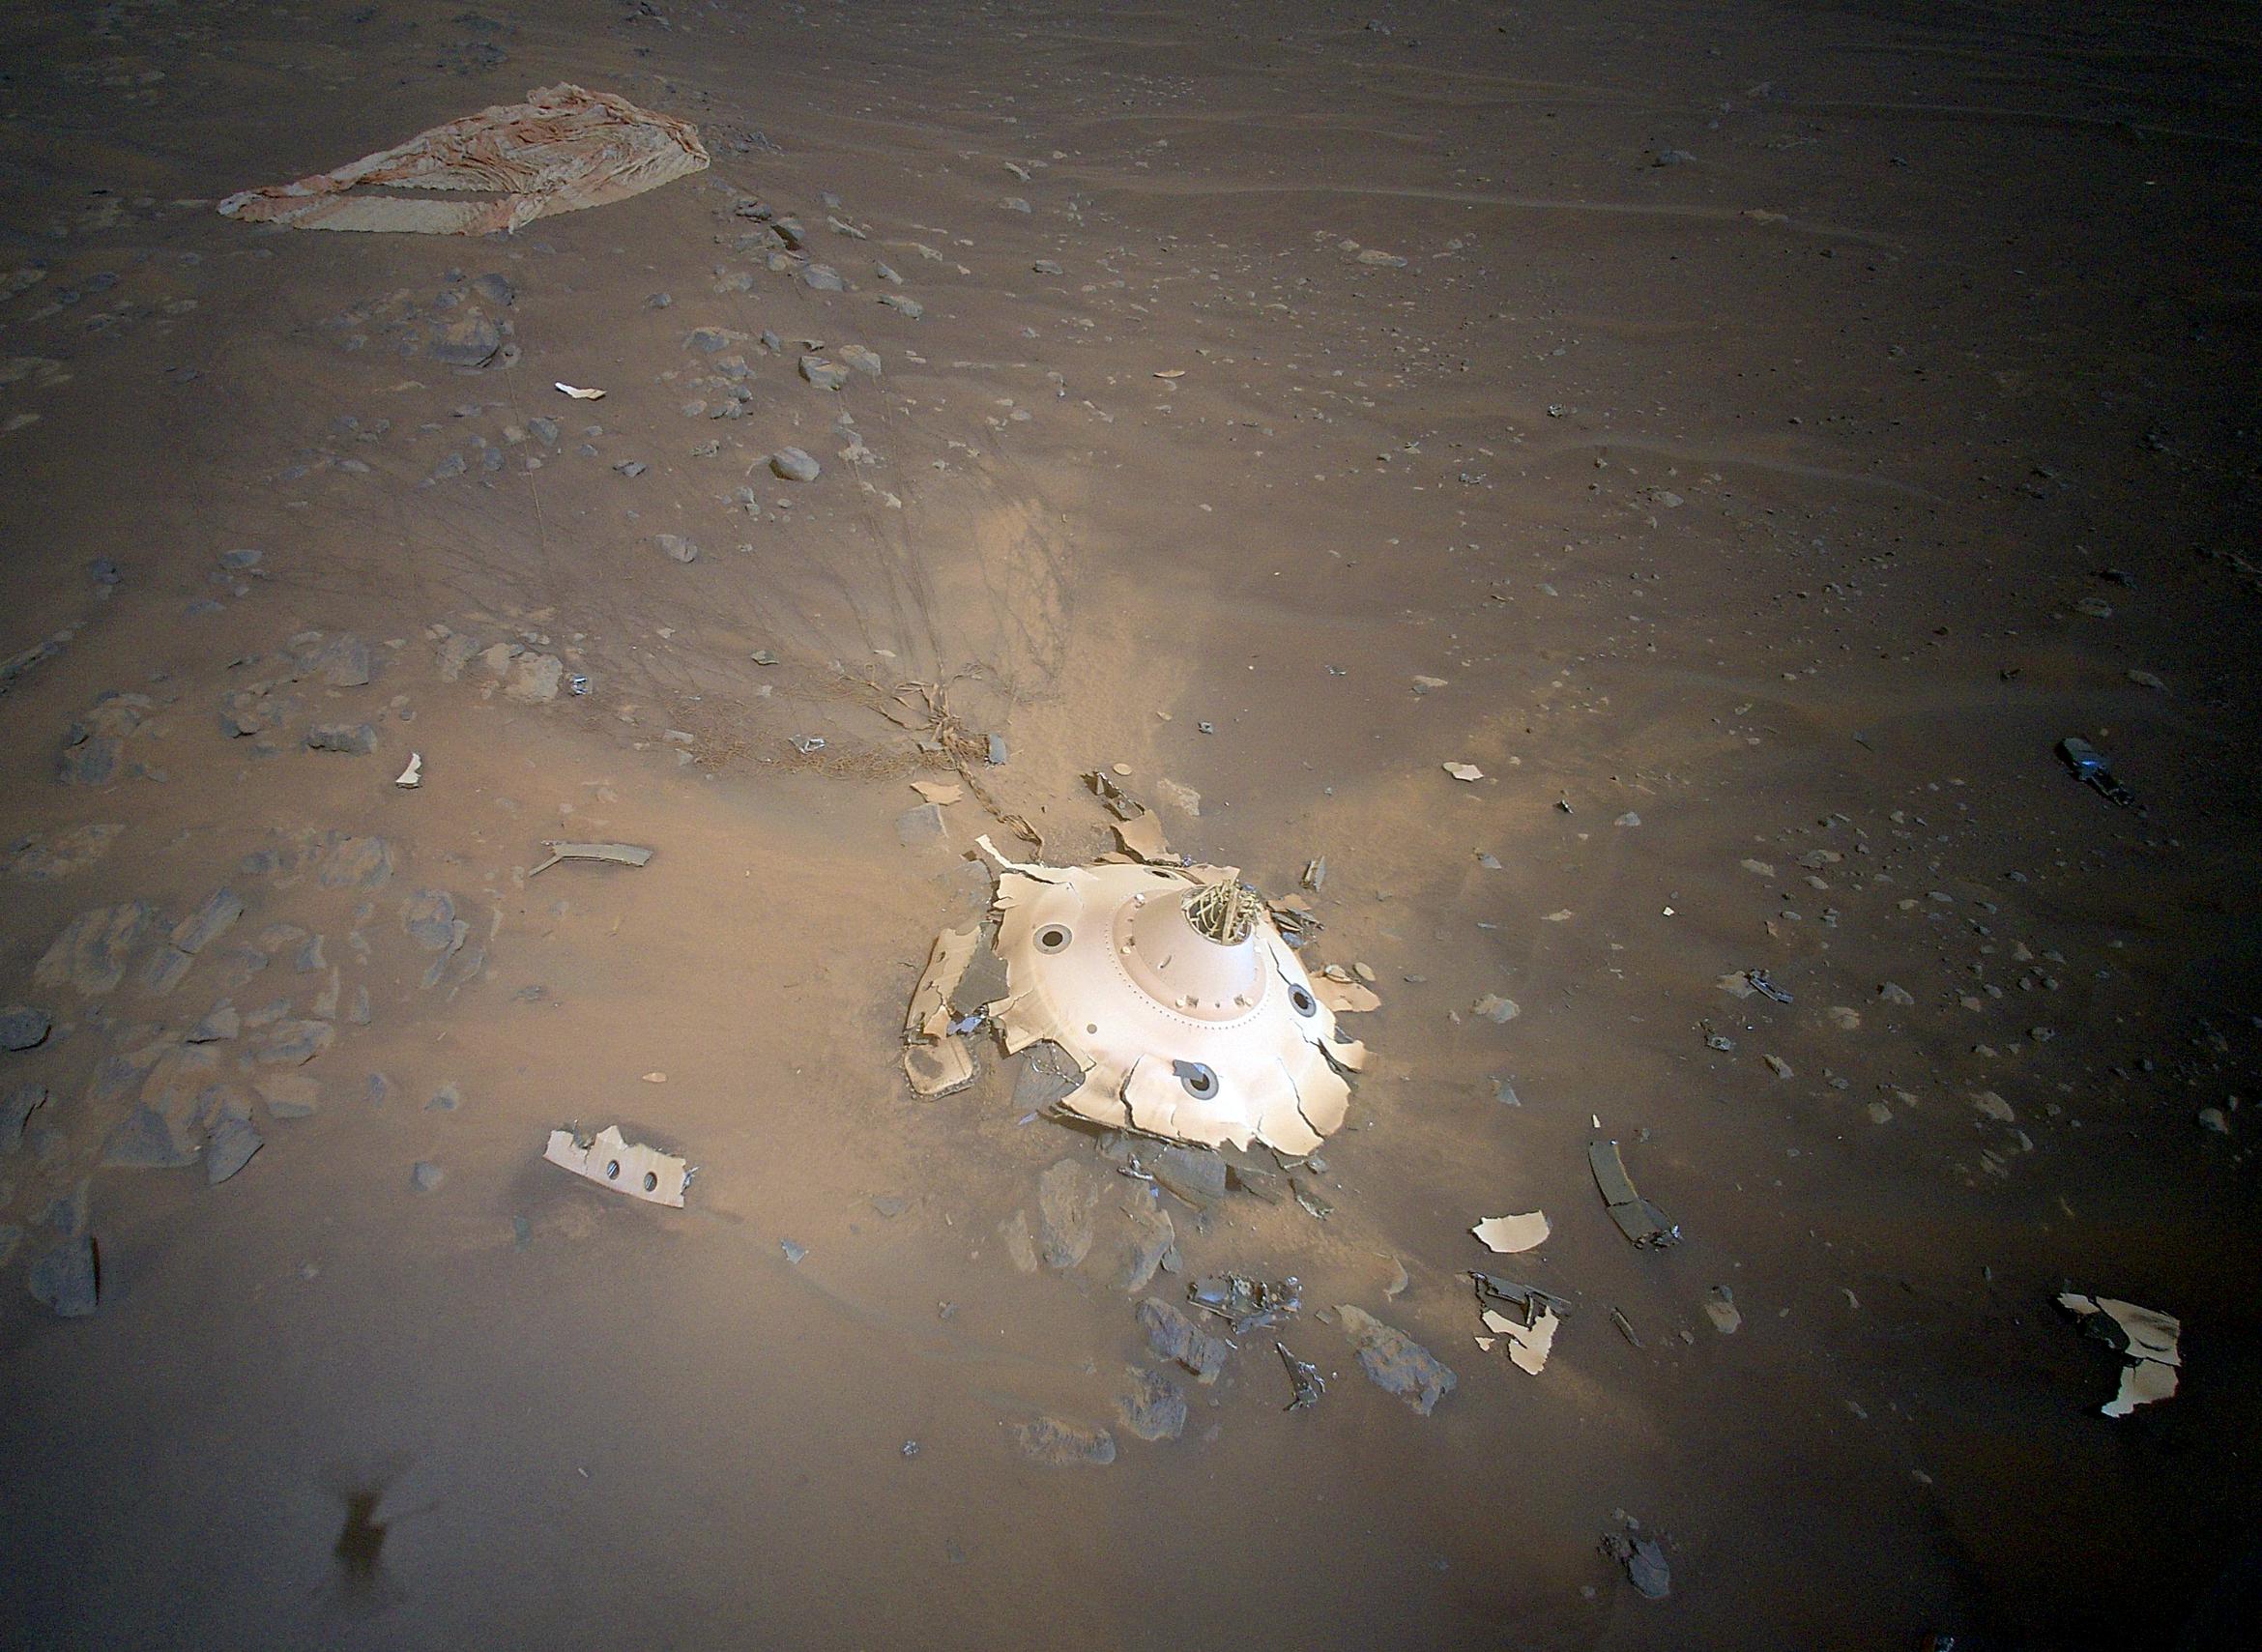 La NASA scopre rottami di metallo su Marte